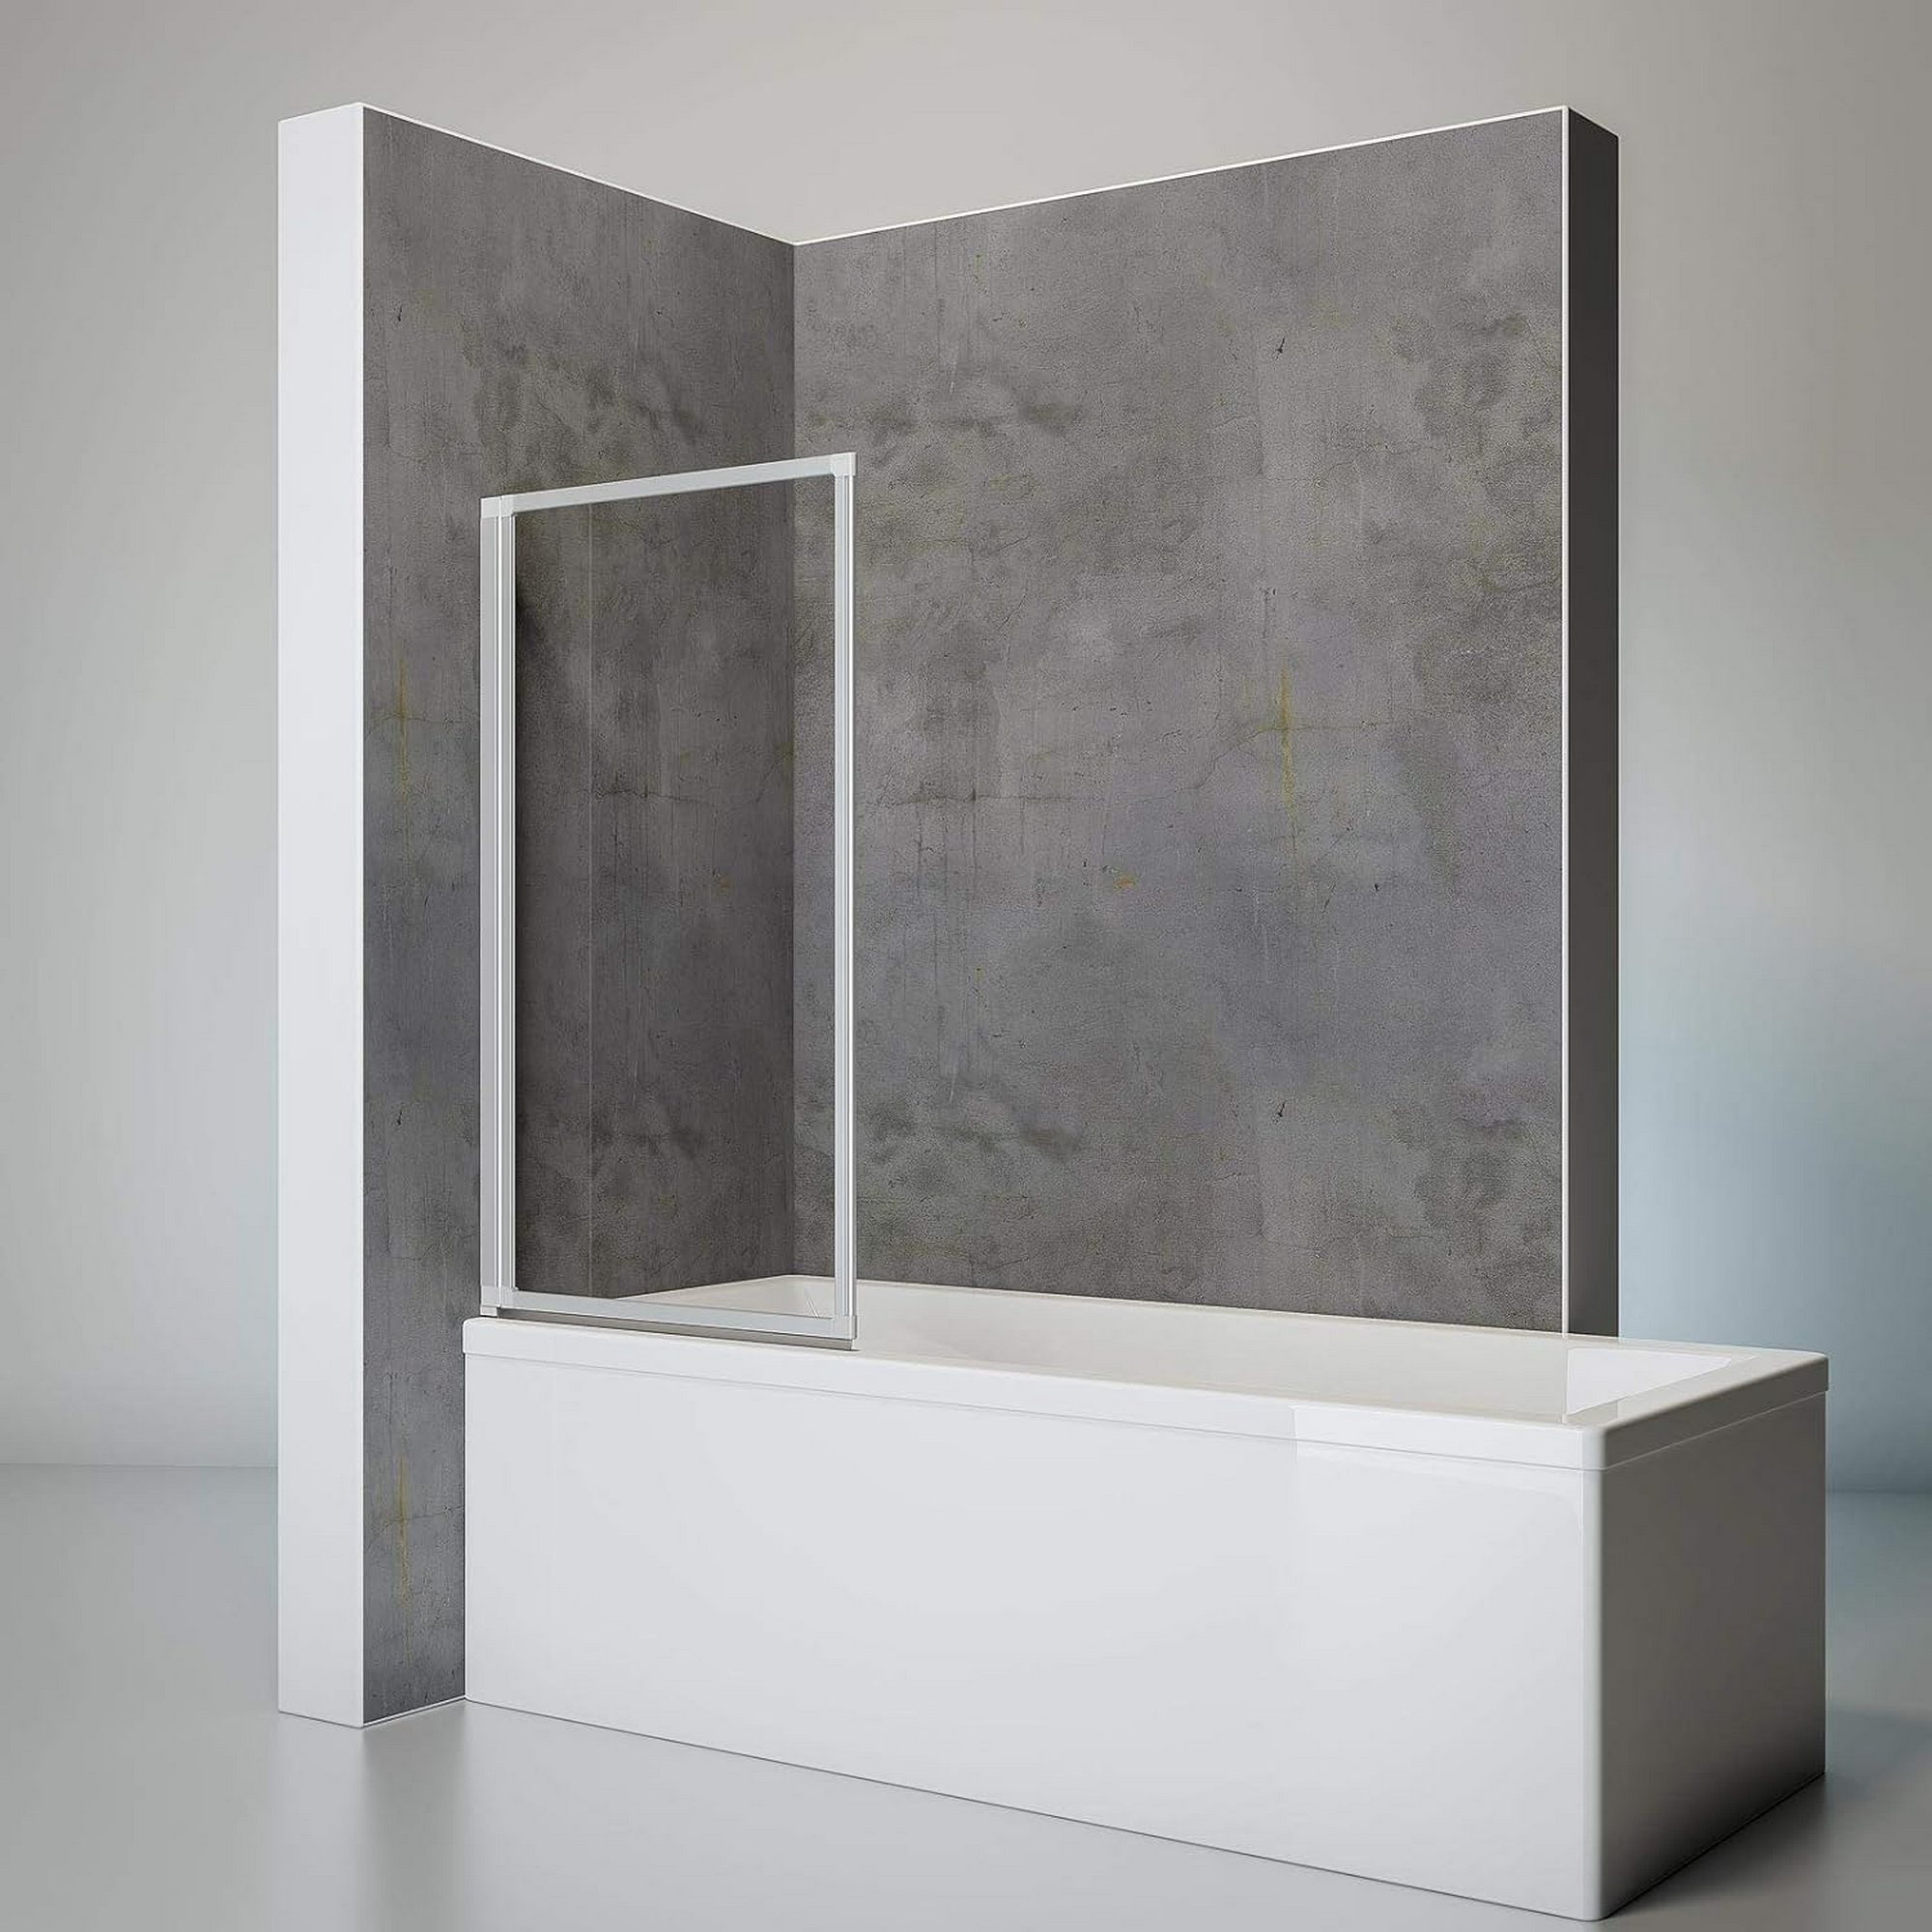 Badewannenaufsatz 'Komfort' Echtglas alu-natur 70 x 121 cm 1-teilig + product picture